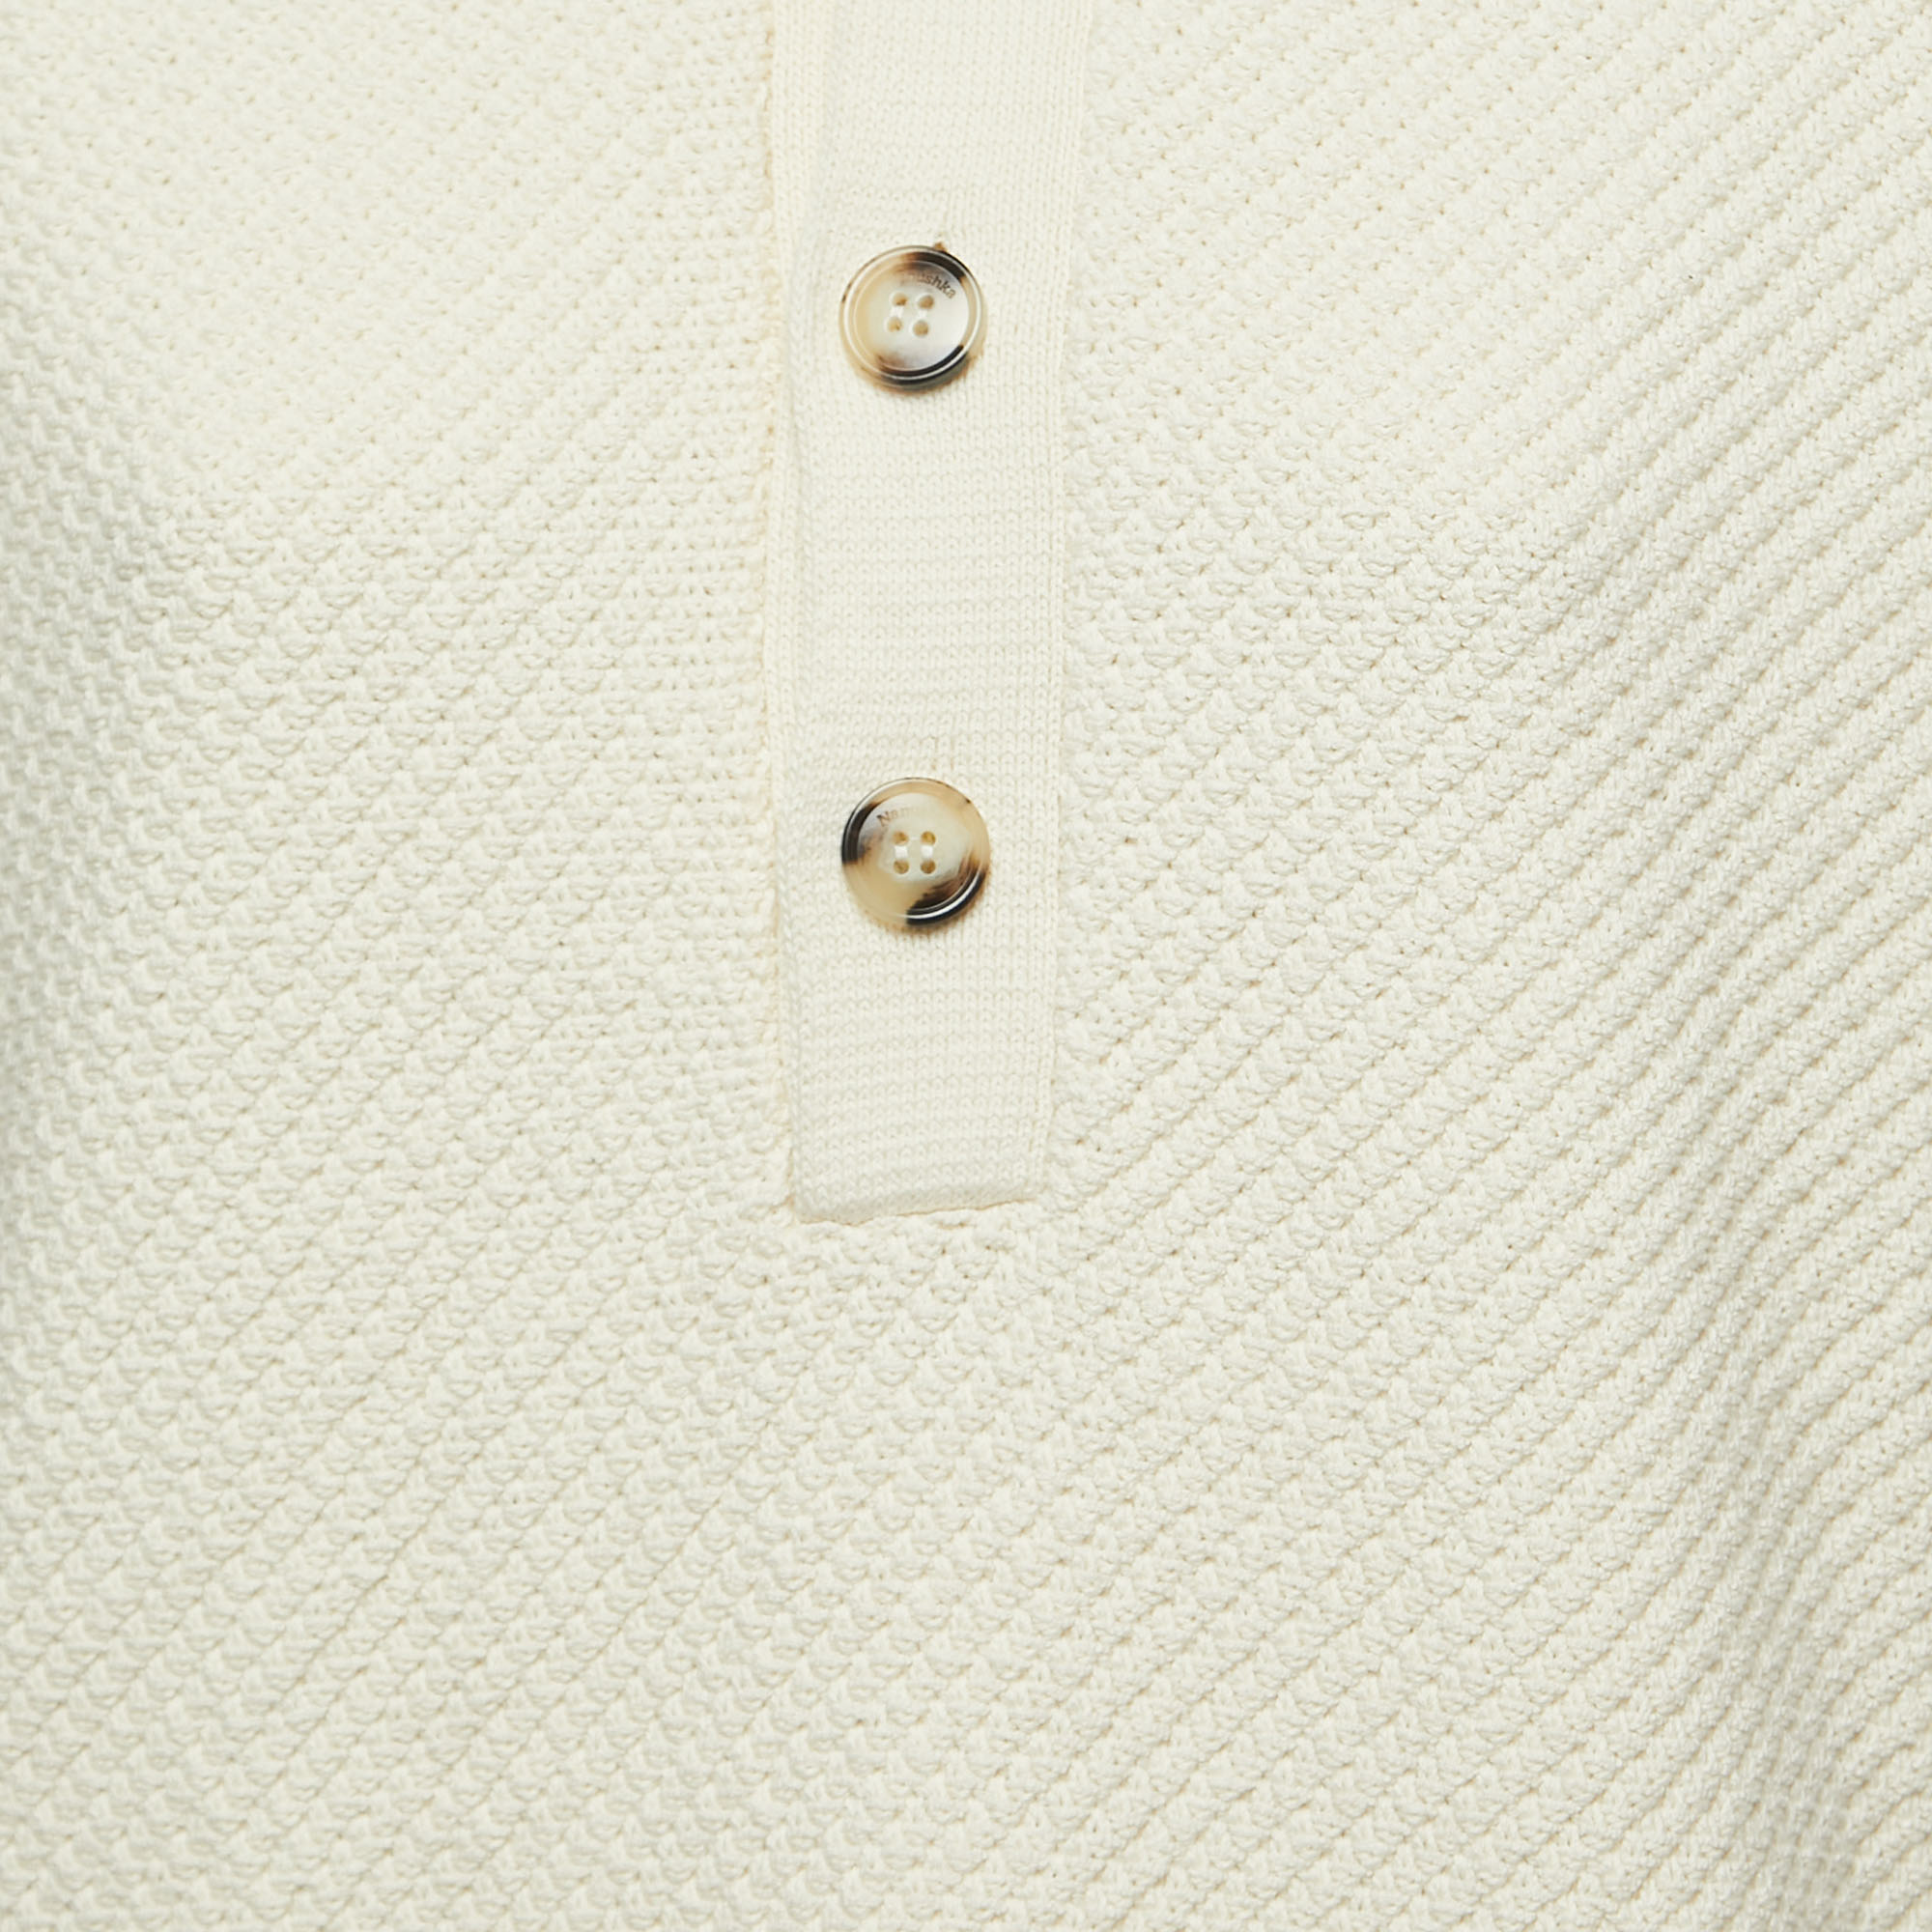 Nanushka Off White Crochet Knit Polo T-Shirt M